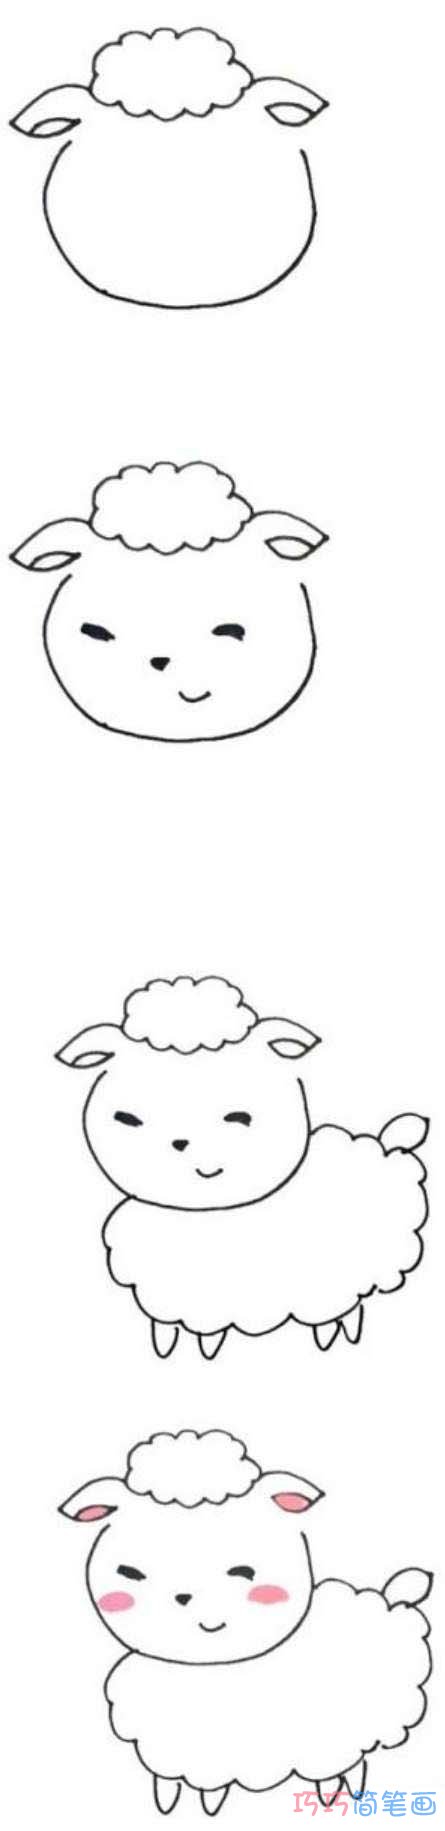 简单可爱小绵羊的画法详细步骤图填色